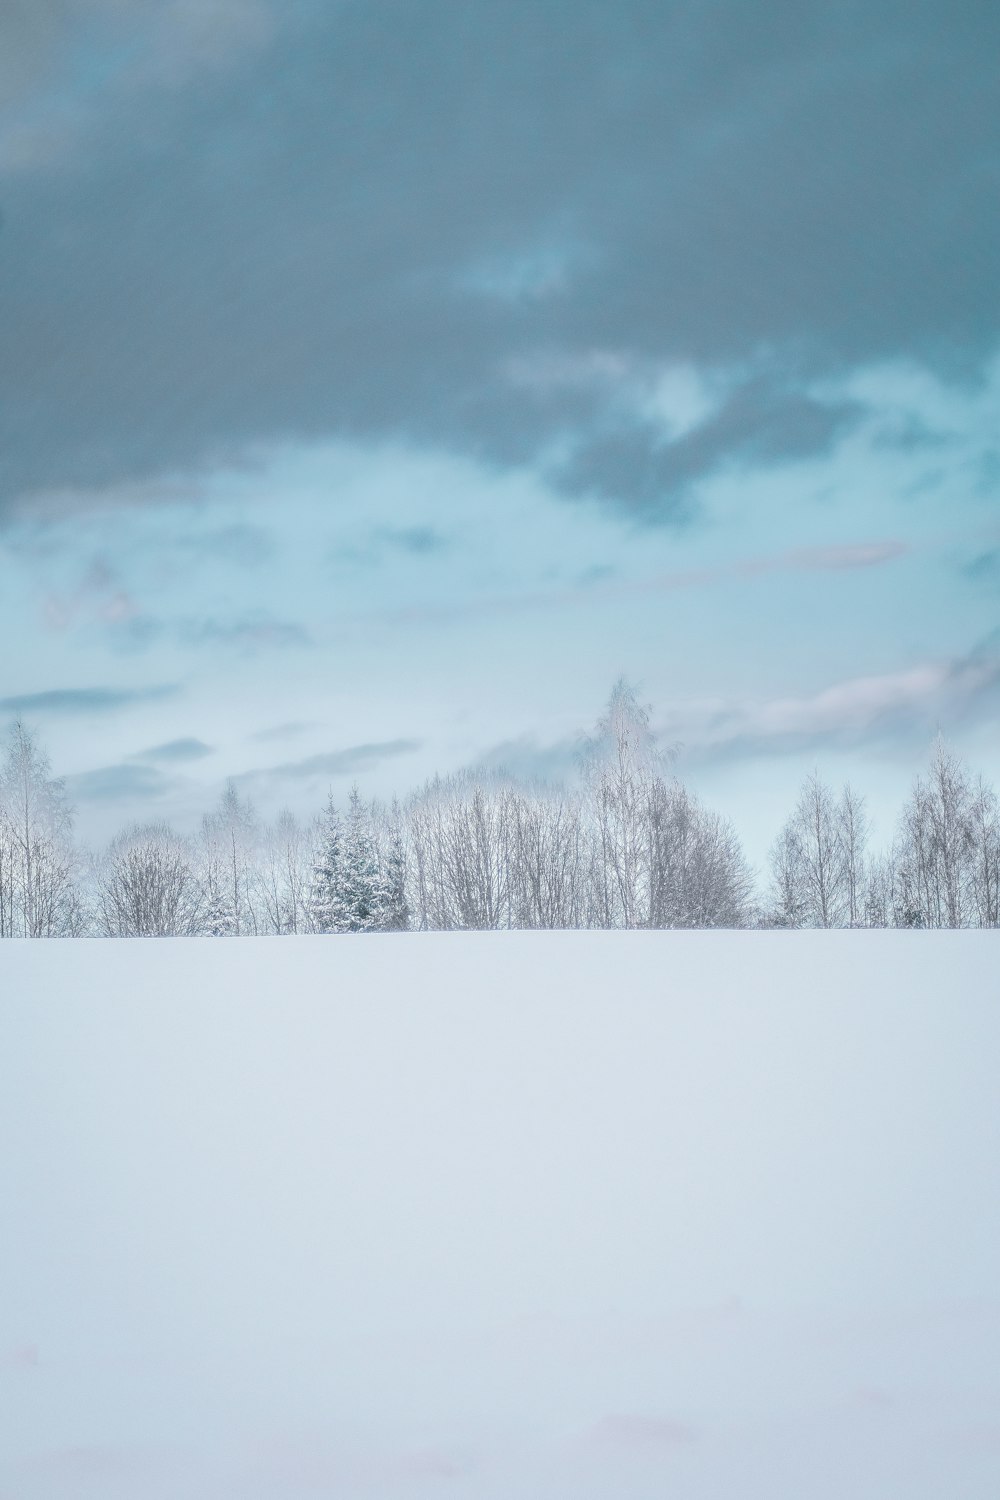 Khám phá ảnh hoang dã tuyết phủ Latvia miễn phí, với những hình ảnh tuyệt đẹp và sống động. Từ những thảm cỏ tuyết phủ, đến những ngọn núi trùng điệp, bạn sẽ được chiêm ngưỡng tuyệt phẩm thiên nhiên vô cùng hoang sơ và đẹp đẽ. Hãy xem ngay để thưởng thức.